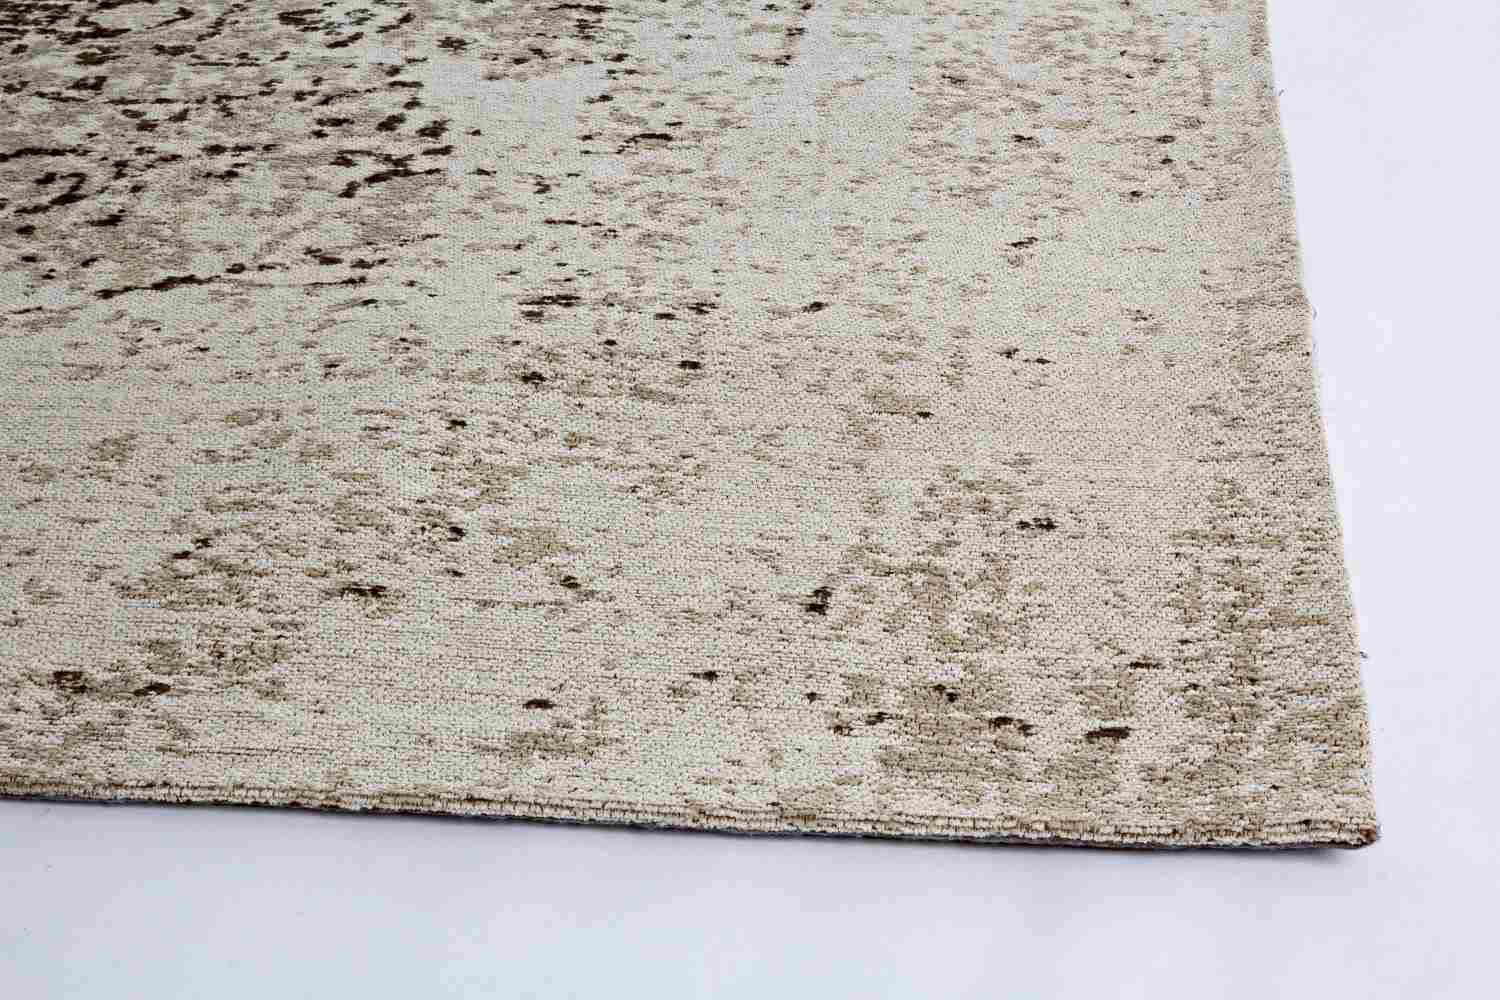 Der Teppich Jaipur überzeugt mit seinem klassischen Design. Gefertigt wurde die Vorderseite aus 95% Baumwolle und 5% Polyester, die Rückseite aus 100% Baumwolle. Der Teppich besitzt einen grauen Farbton und die Maße von 160x230 cm.